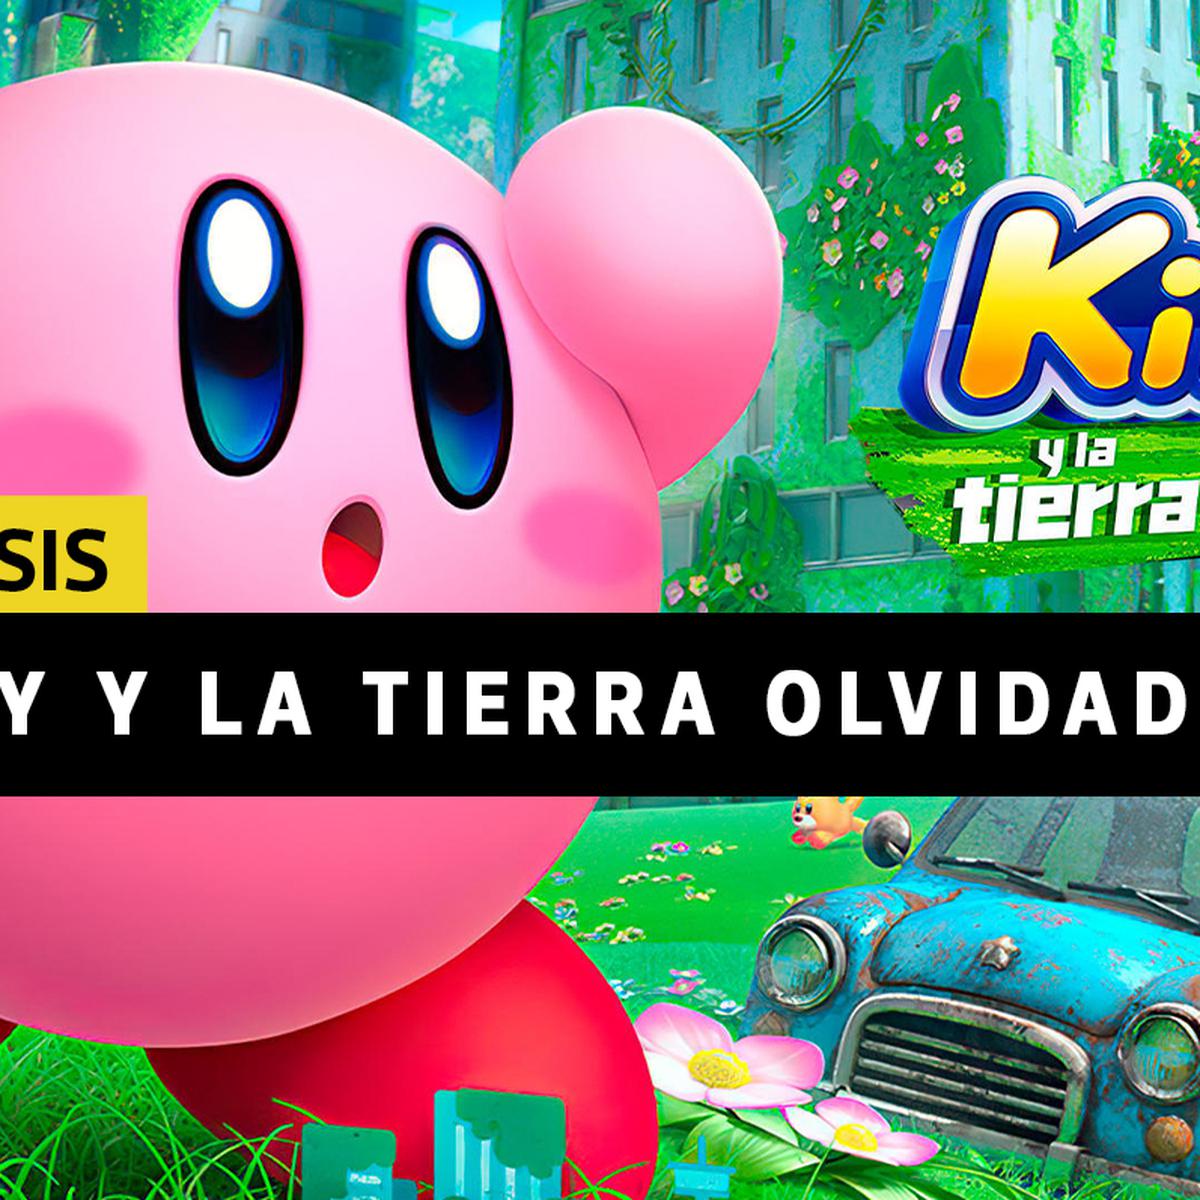 JuegosADN on X: 🔥 ¡Consigue una Switch Lite y una copia de Kirby y la Tierra  Olvidada! ✓ Sigue a @JuegosADN en TW ✓ Haz RT al tweet del concurso ✓  Responde